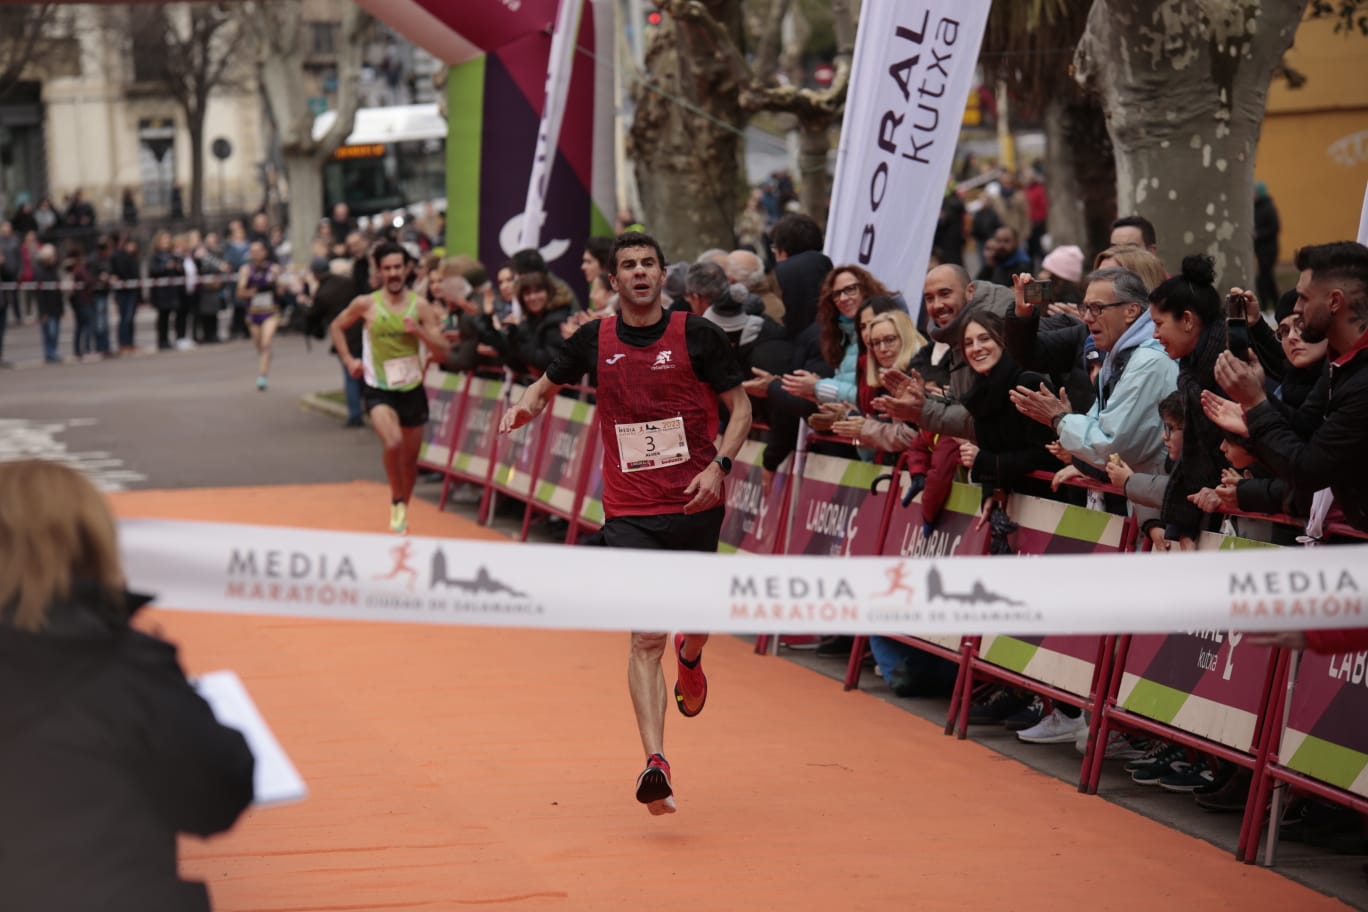 Fotos: Javier Alves y Gema Martín ganan la XI Media Maratón Ciudad de Salamanca